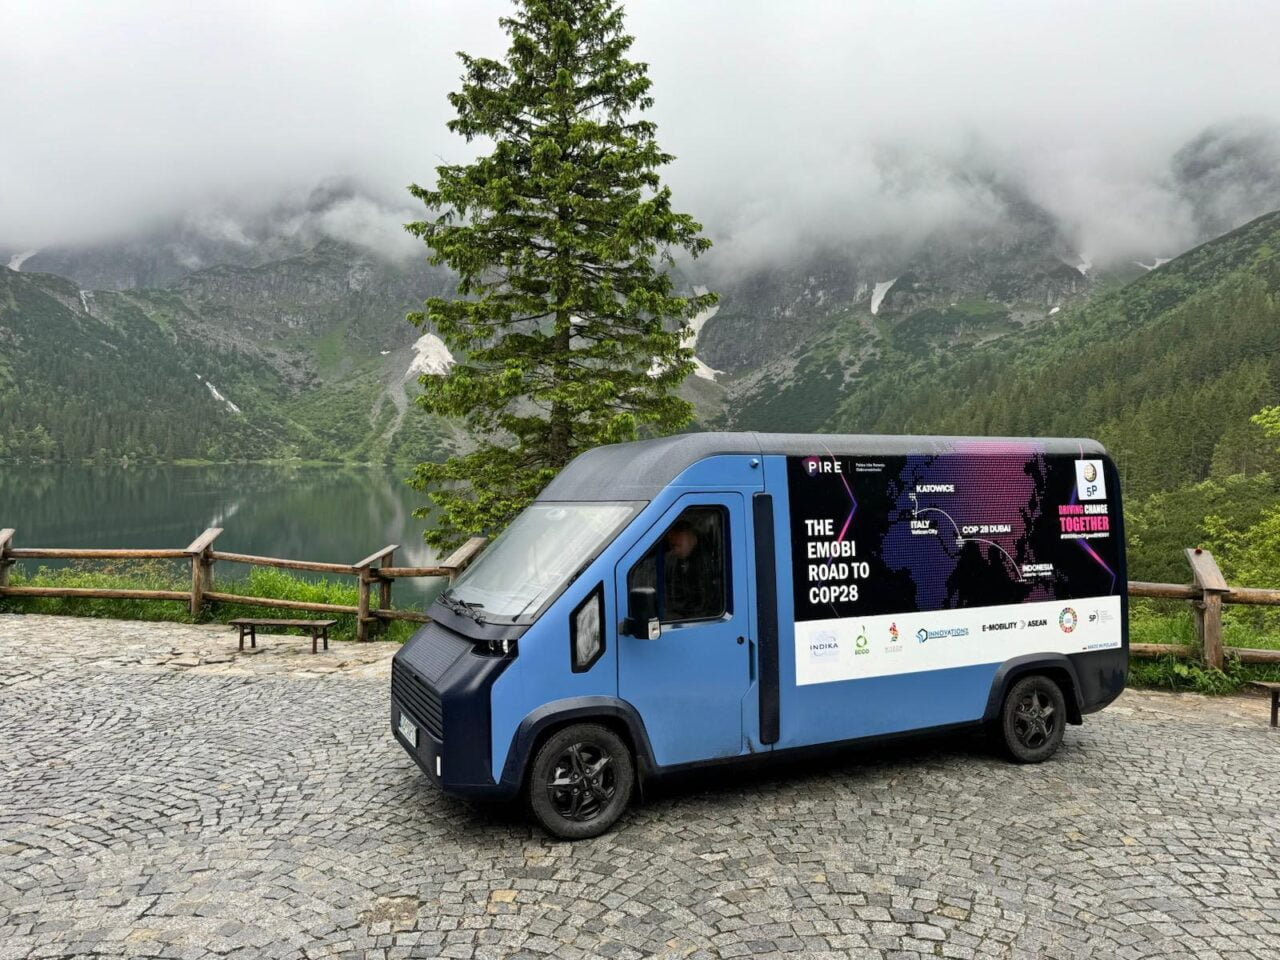 Elektryczny bus nad Morskie Oko Niebieska furgonetka z napisem "The Emobi Road to COP28" zaparkowana przy górskim jeziorze, w tle góry pokryte mgłą i lasem.